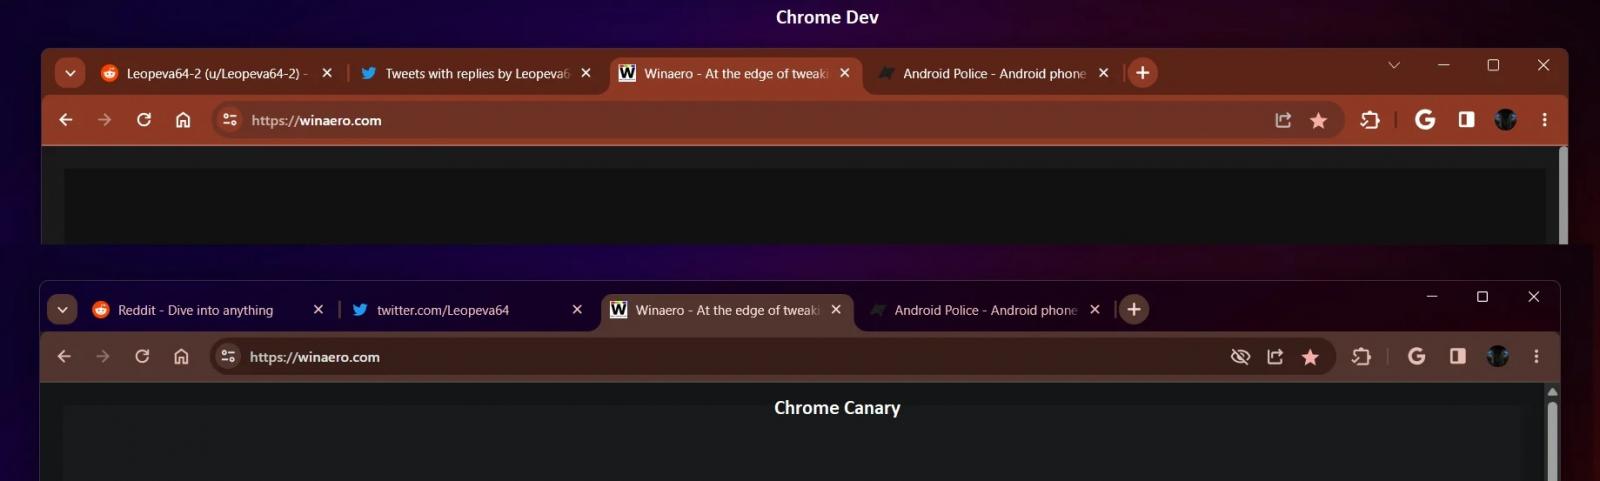 Chrome custom theme